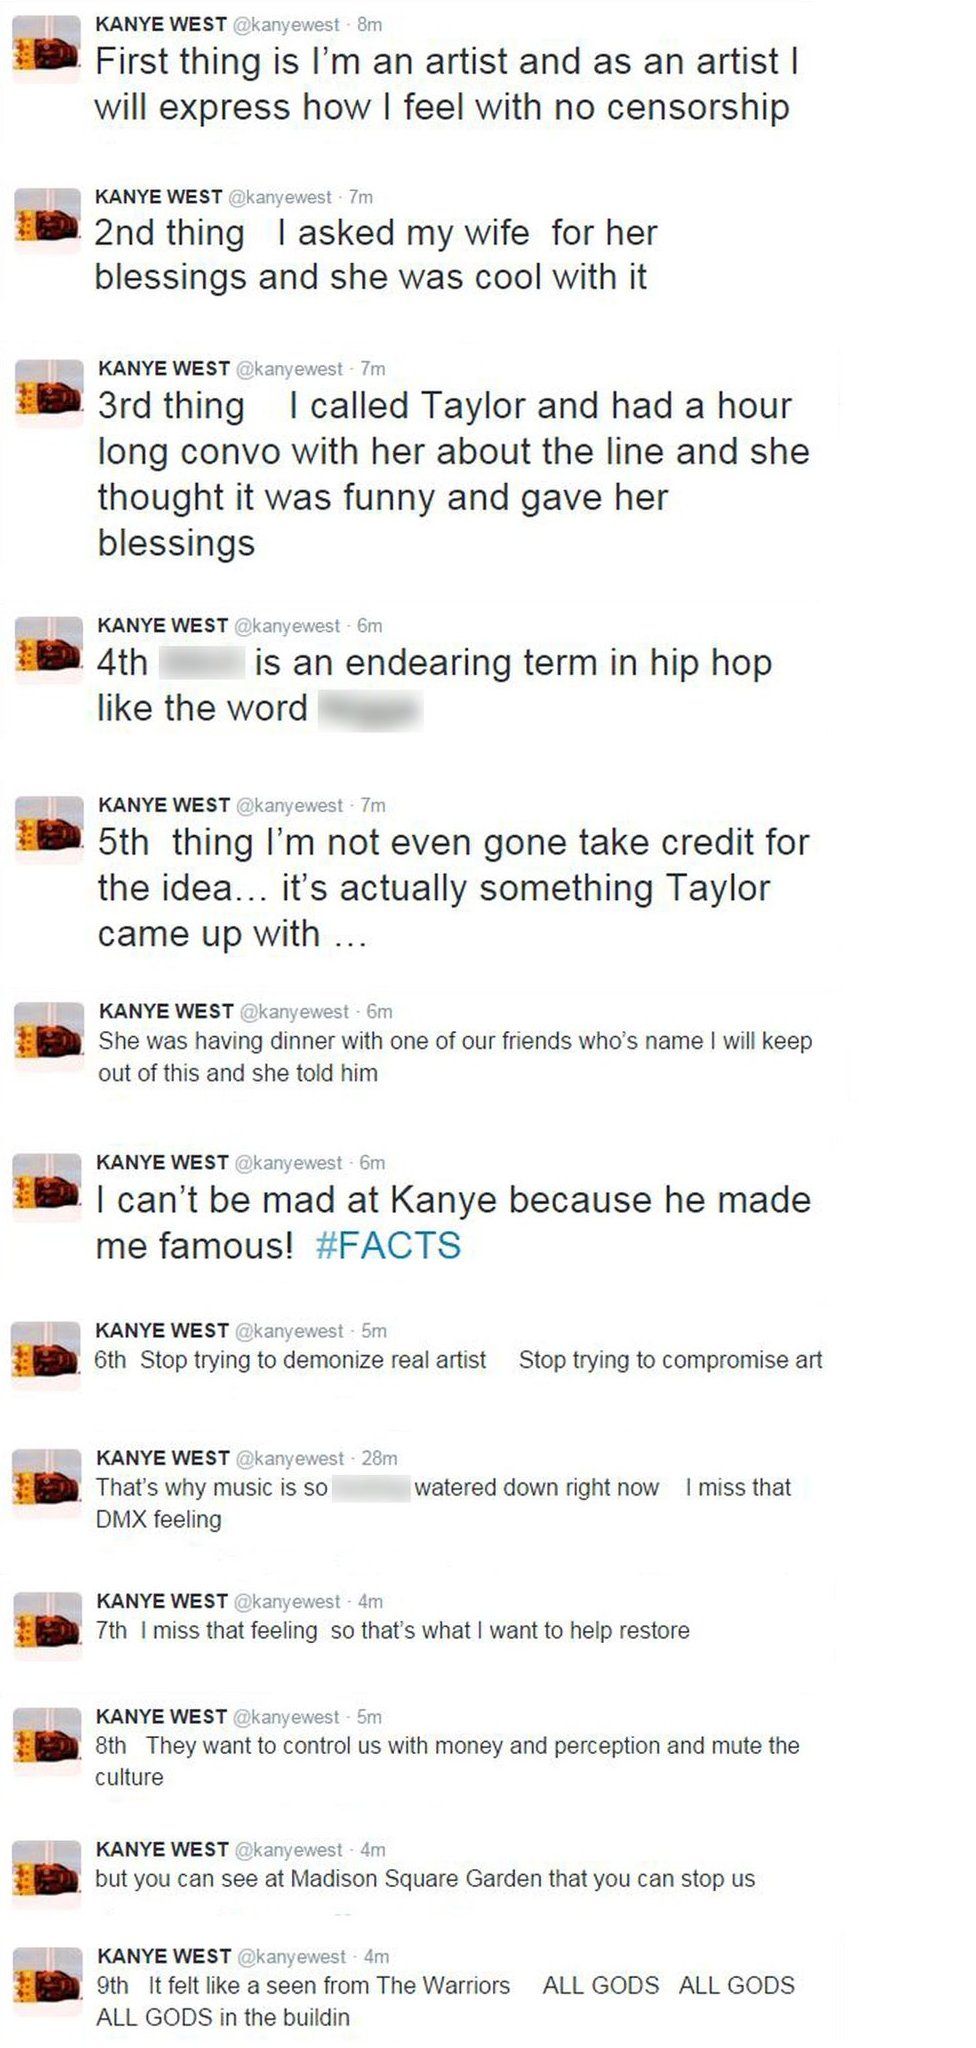 Kanye West – Bad News Lyrics